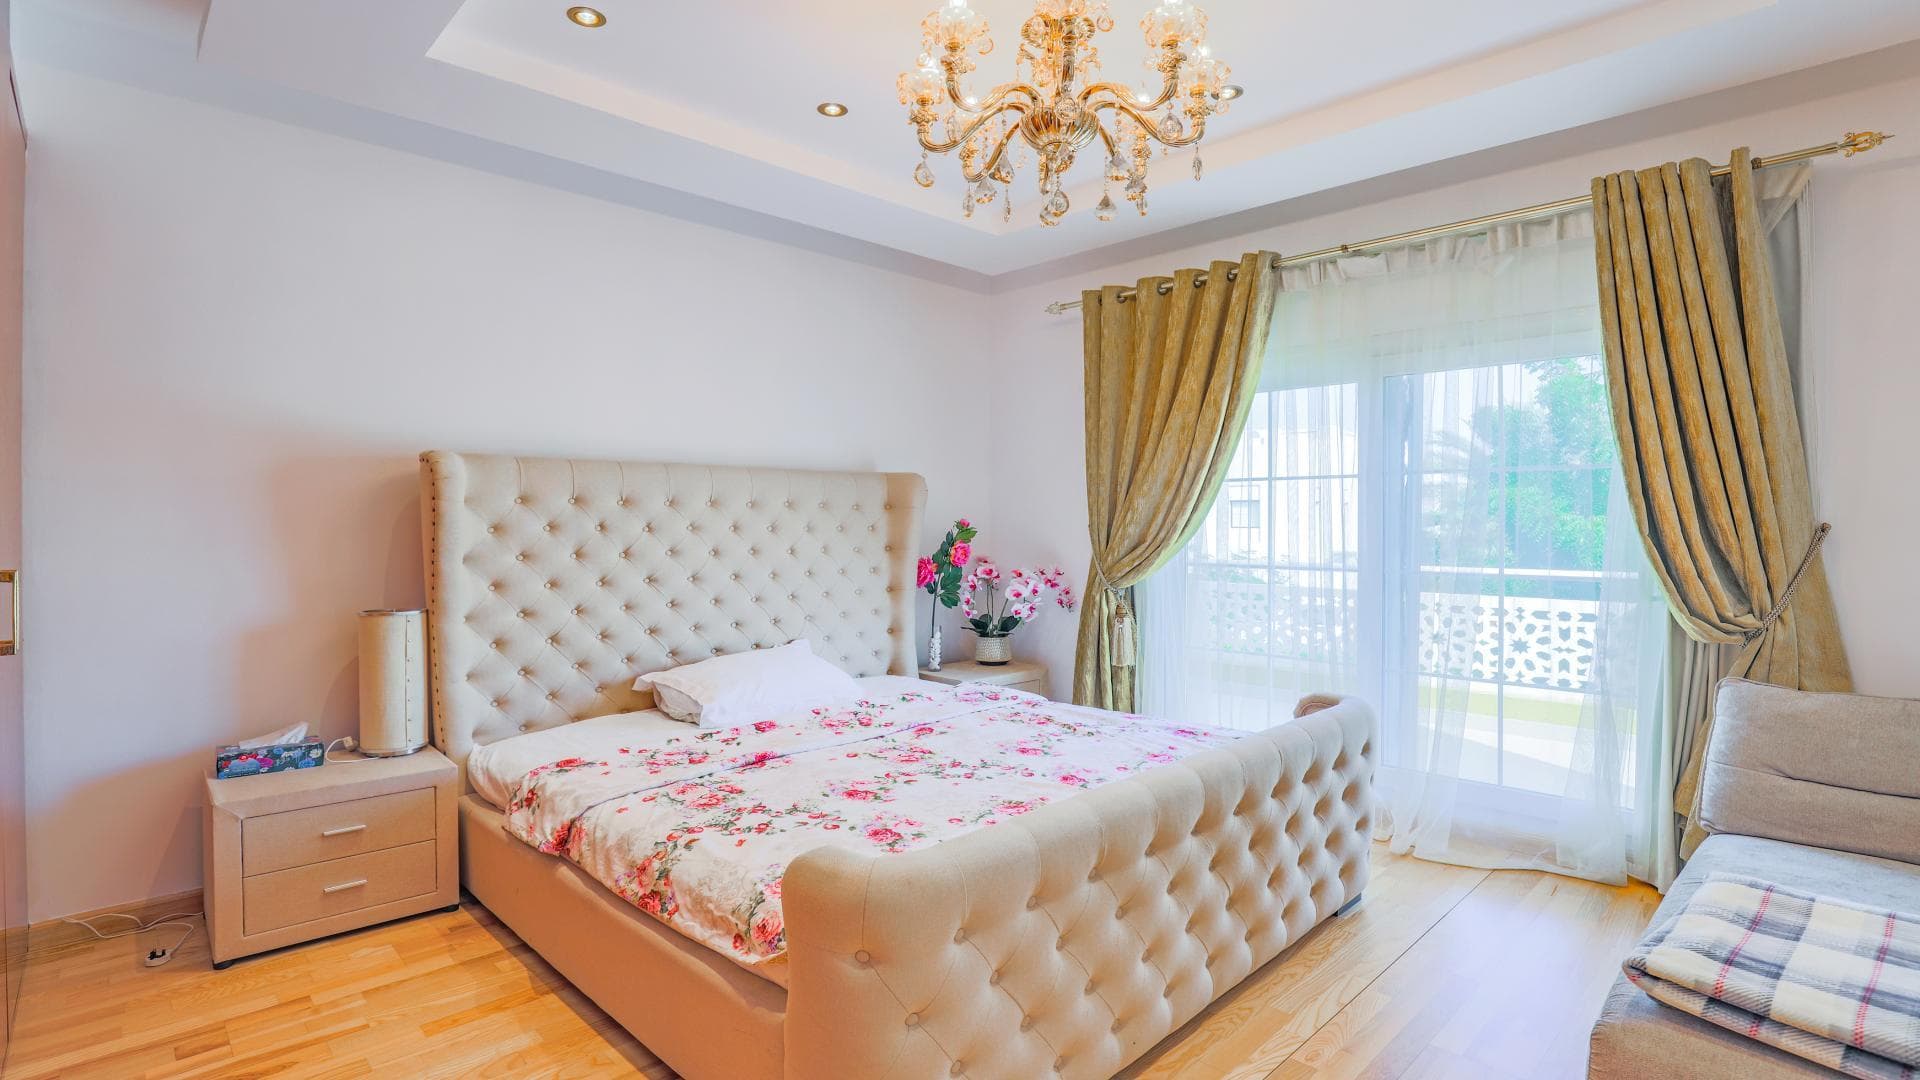 6 Bedroom Villa For Rent  Lp38936 1f064b1319e4fc00.jpg